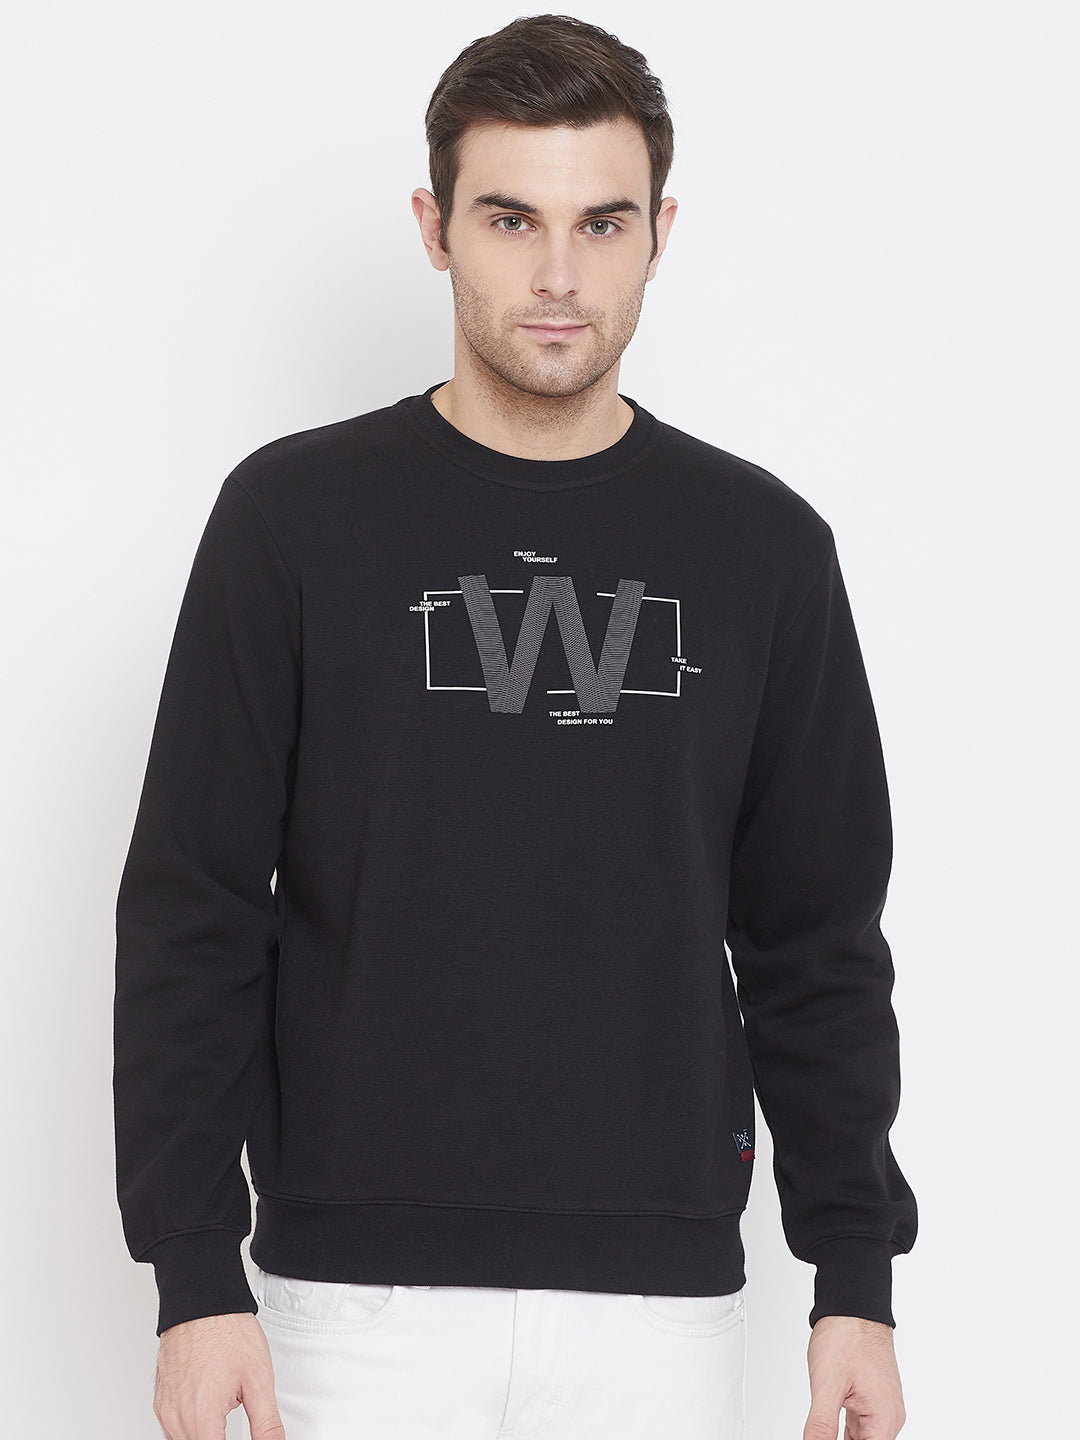 Black Printed Round Neck Sweatshirt - Men Sweatshirts